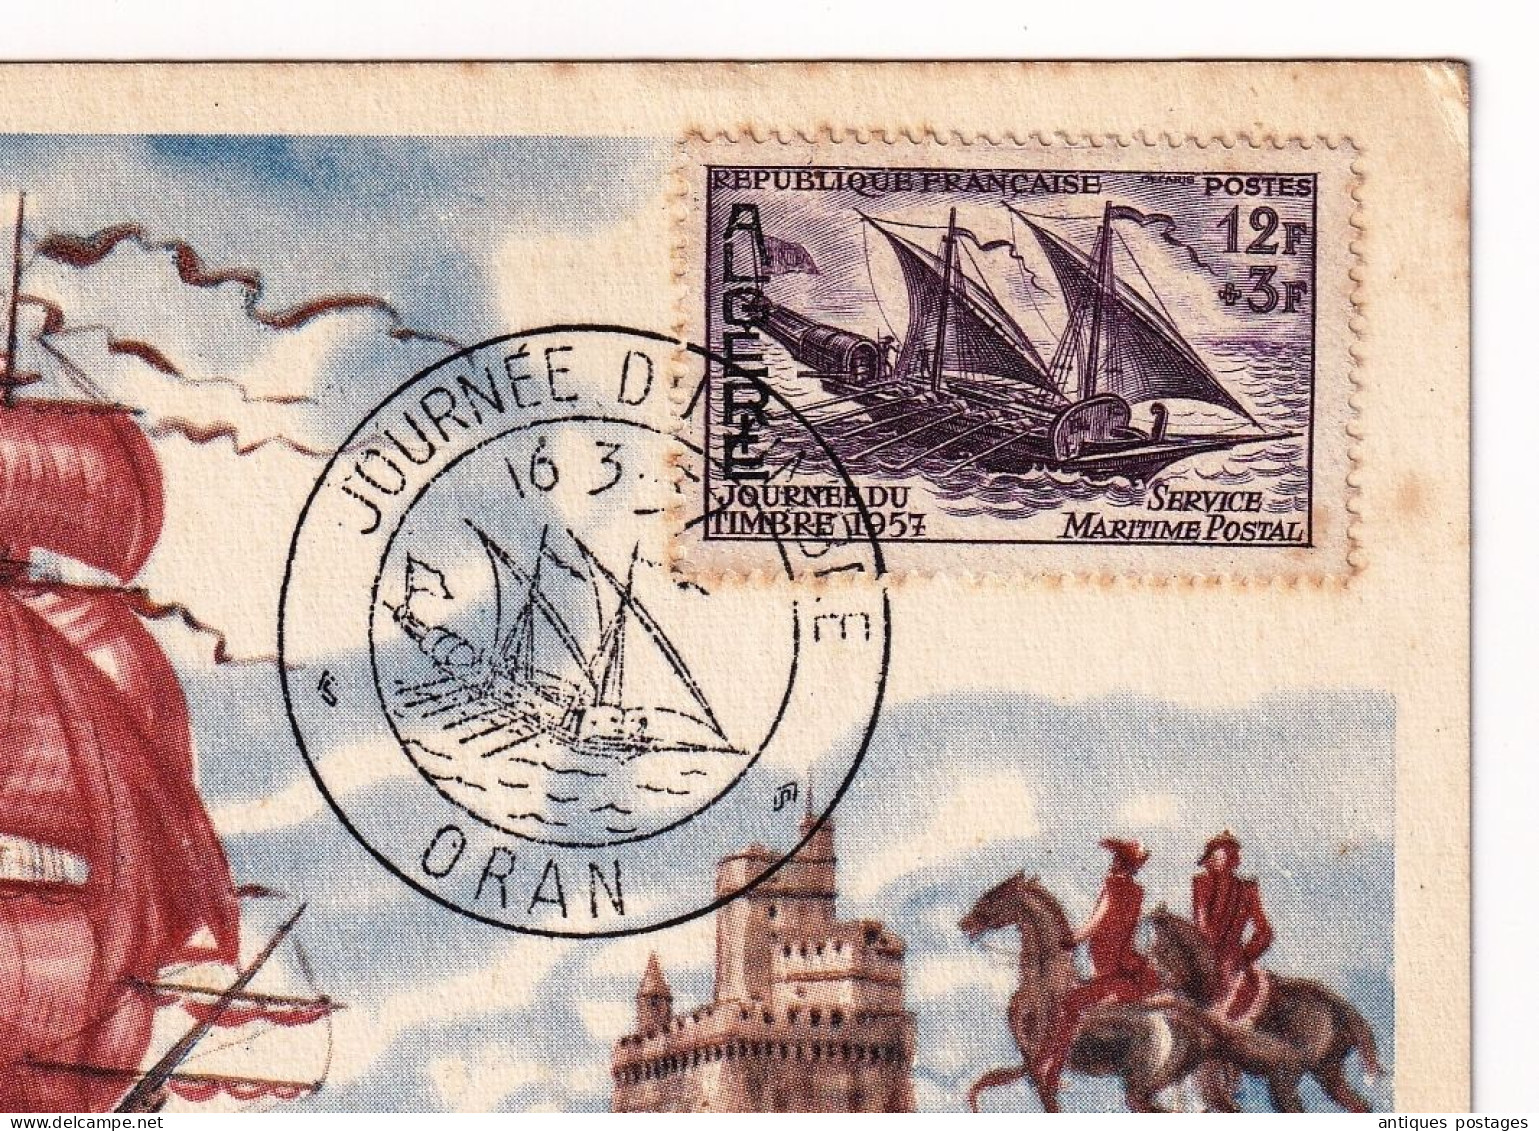 Oran 1957 Journée Du Timbre Algérie Service Maritime Postal Le Messager Des Îles Les Maximaphiles Algériens Algéria - Brieven En Documenten